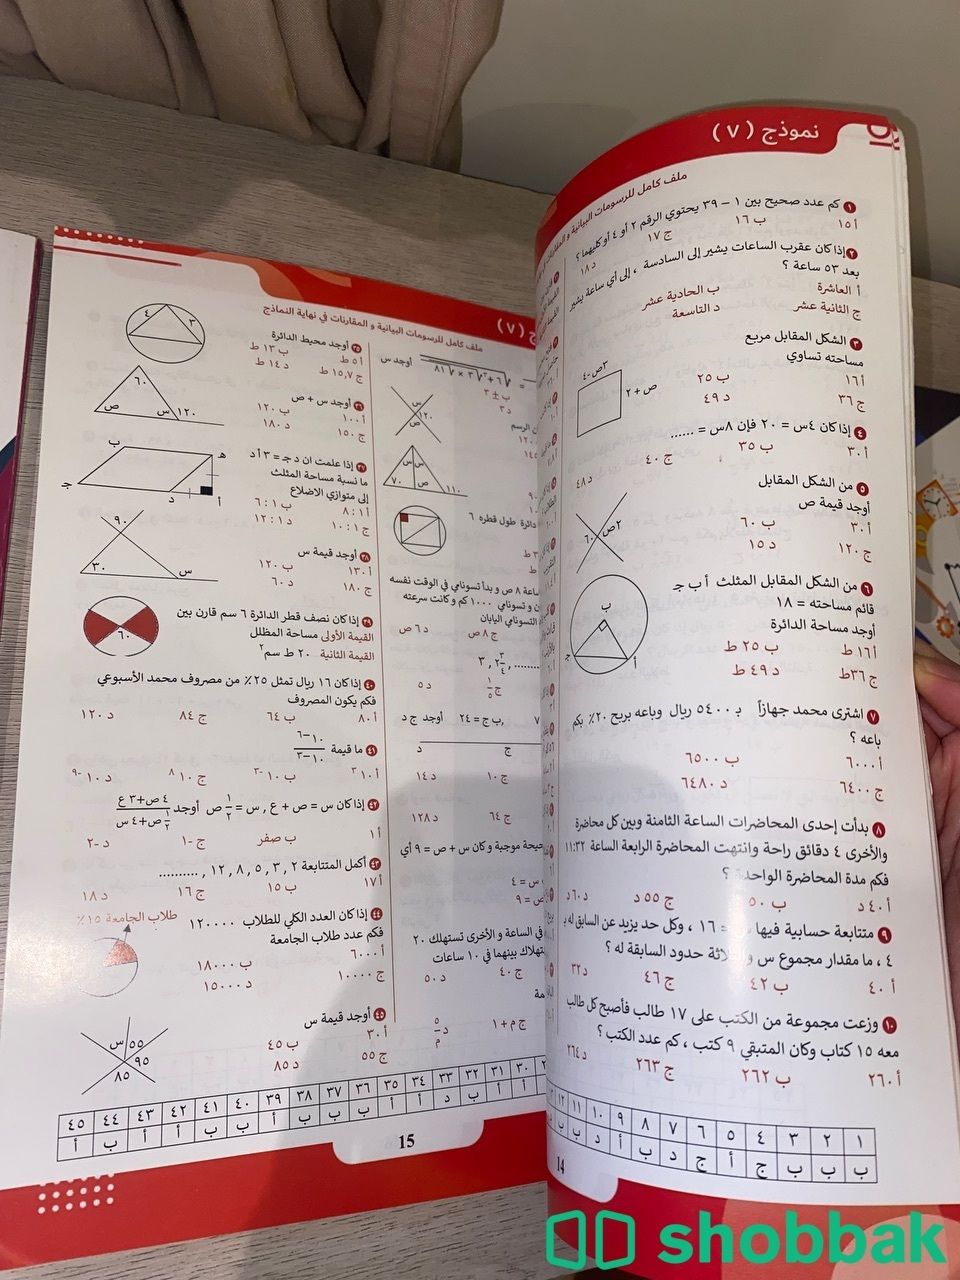 بيع كتاب المعصر تجميعات ١٢٠  Shobbak Saudi Arabia